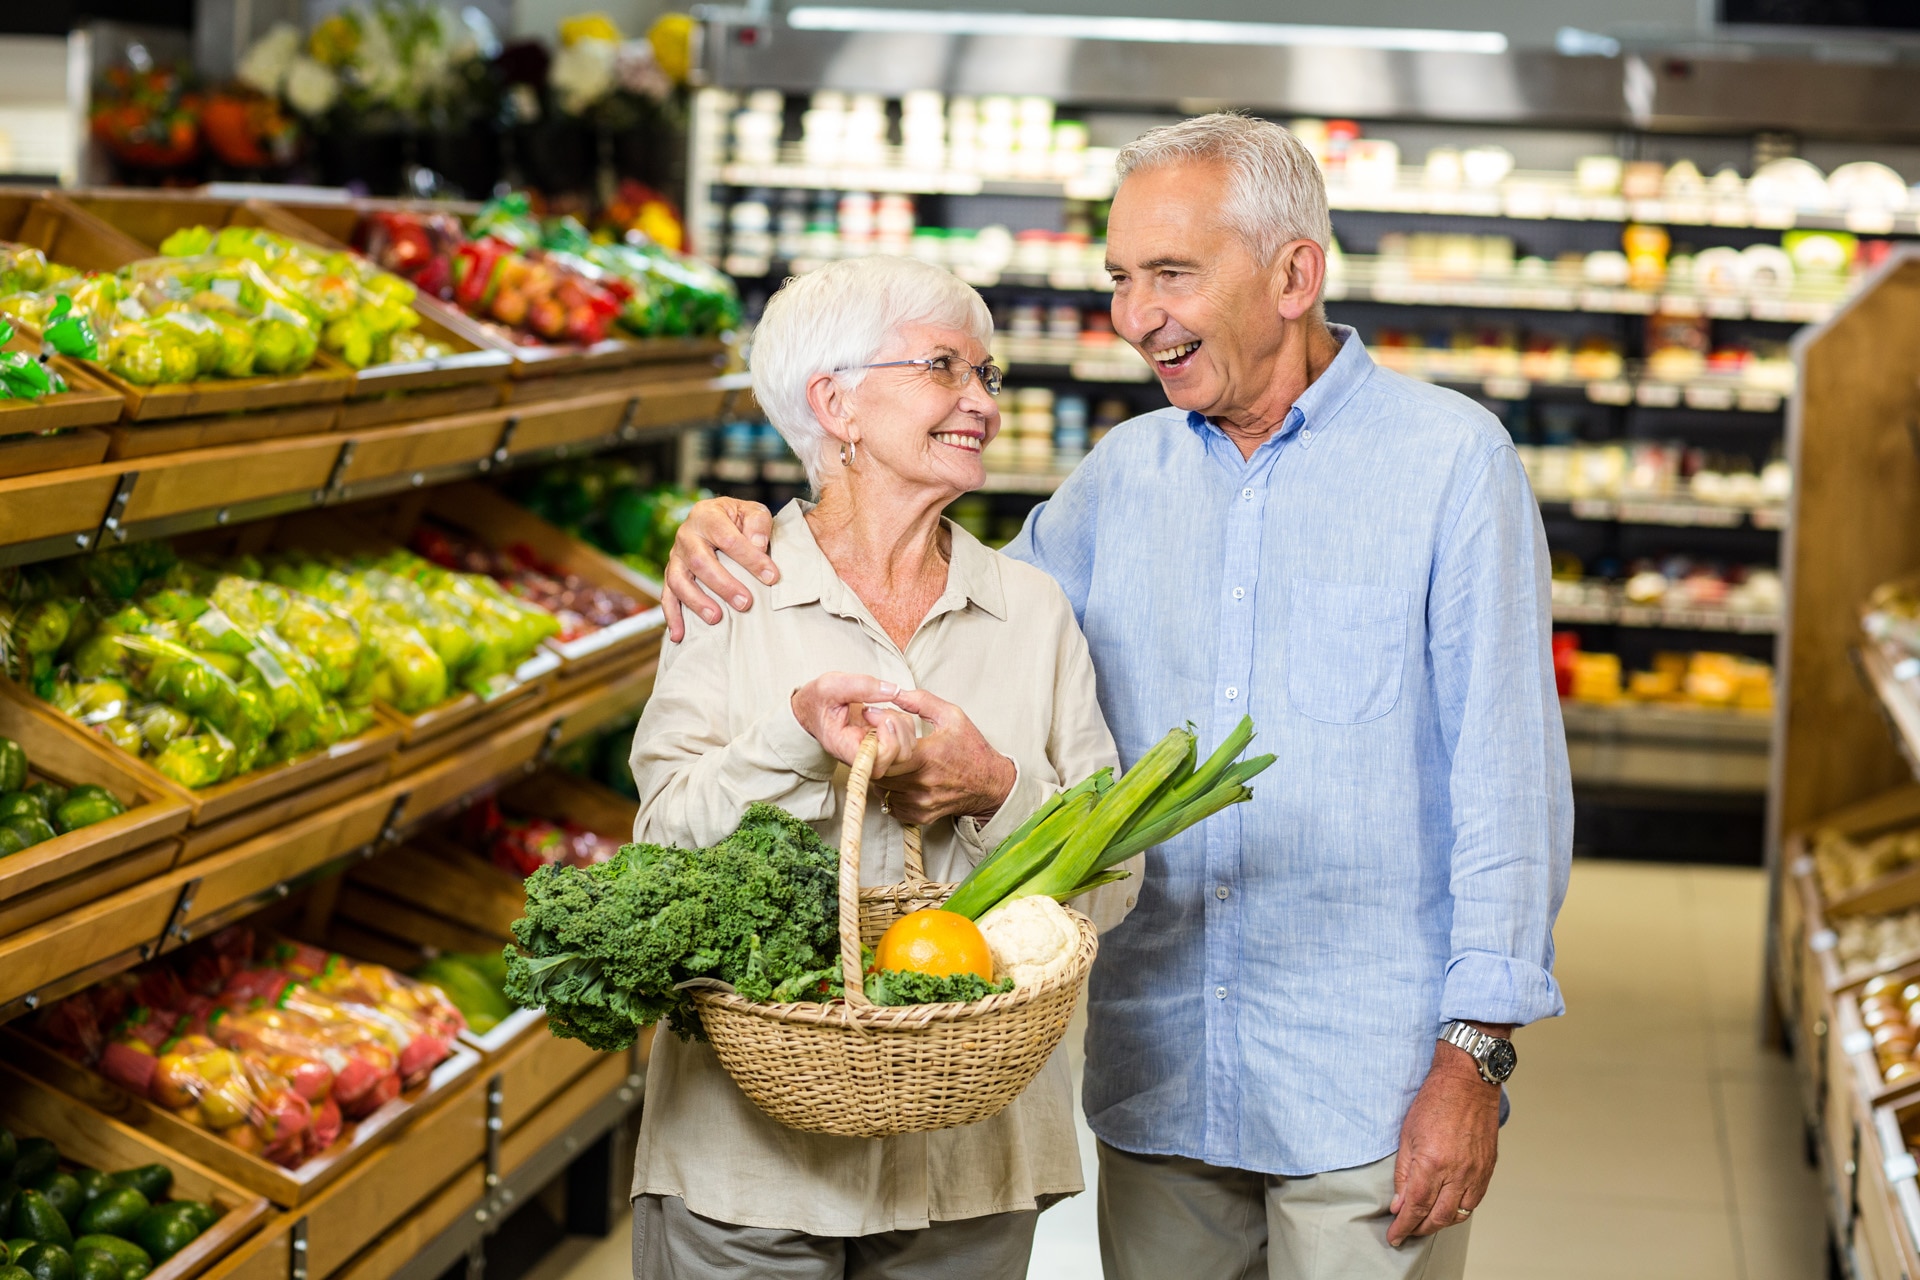 Mosolygós idősebb házaspár zöldségekkel megrakott kosárral az élelmiszerboltban;